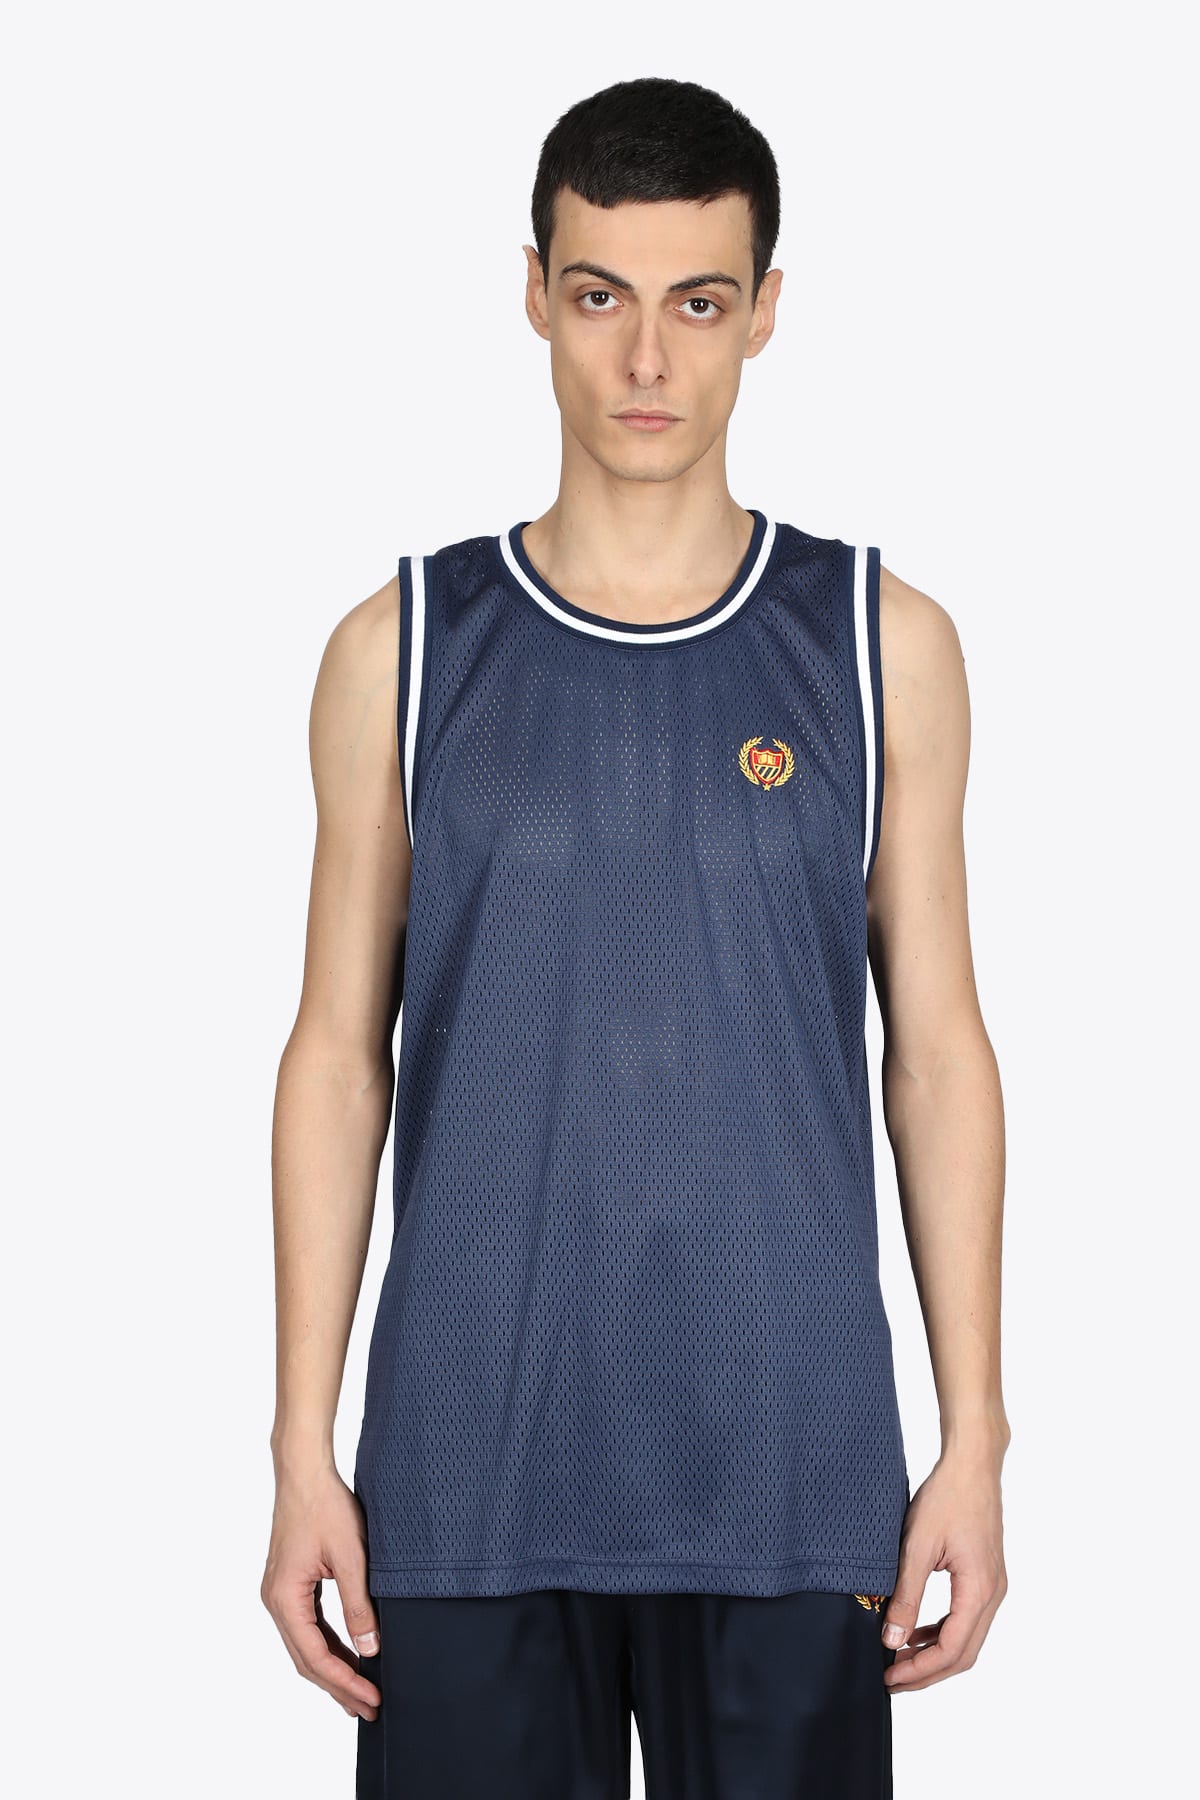 Bel Air Basketball Jersey Emb. crest Dark blue mesh vest - Basketball jersy emb. crest